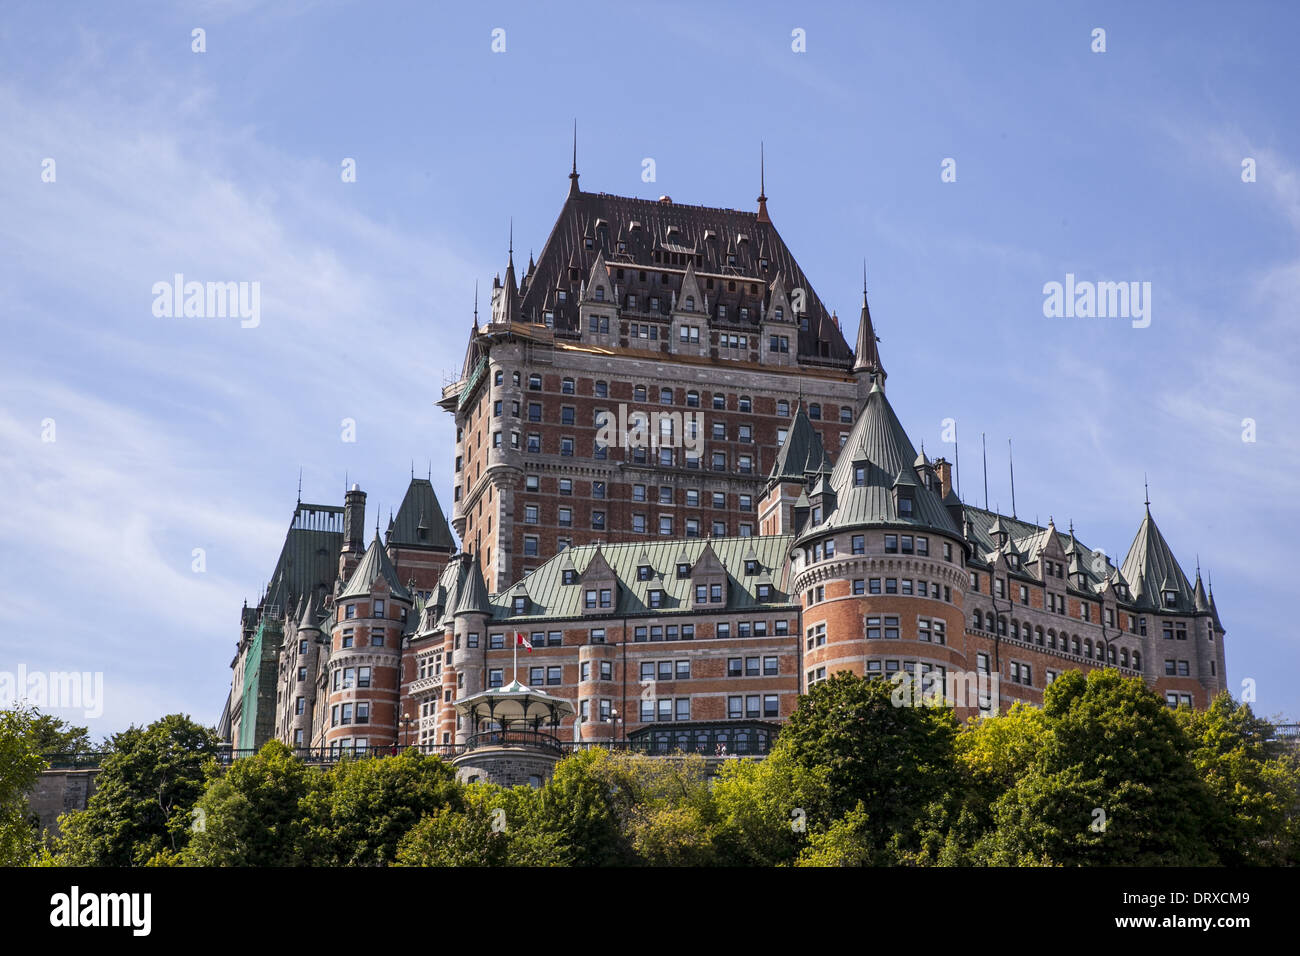 Immagine a colori dell'hotel Chateau Frontenac a Quebec City, Quebec, Canada in estate. Foto Stock